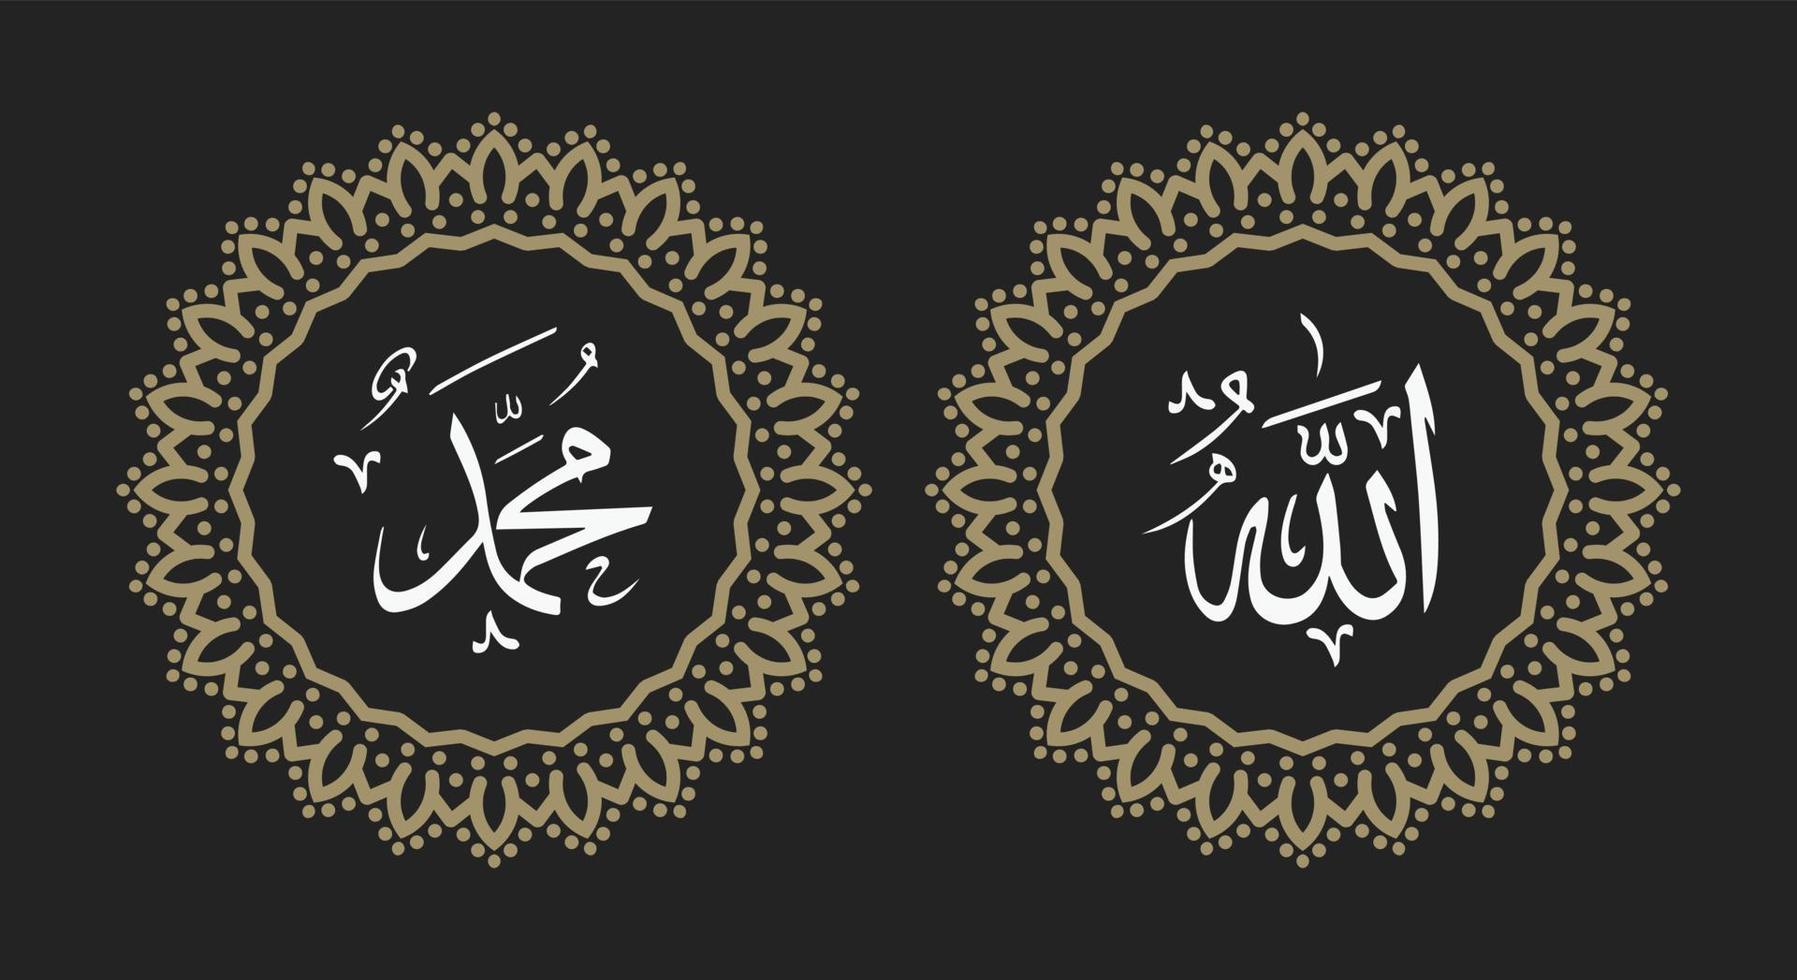 Allah Mohammed Arabisch schoonschrift achtergrond met ronde ornament en retro kleur vector